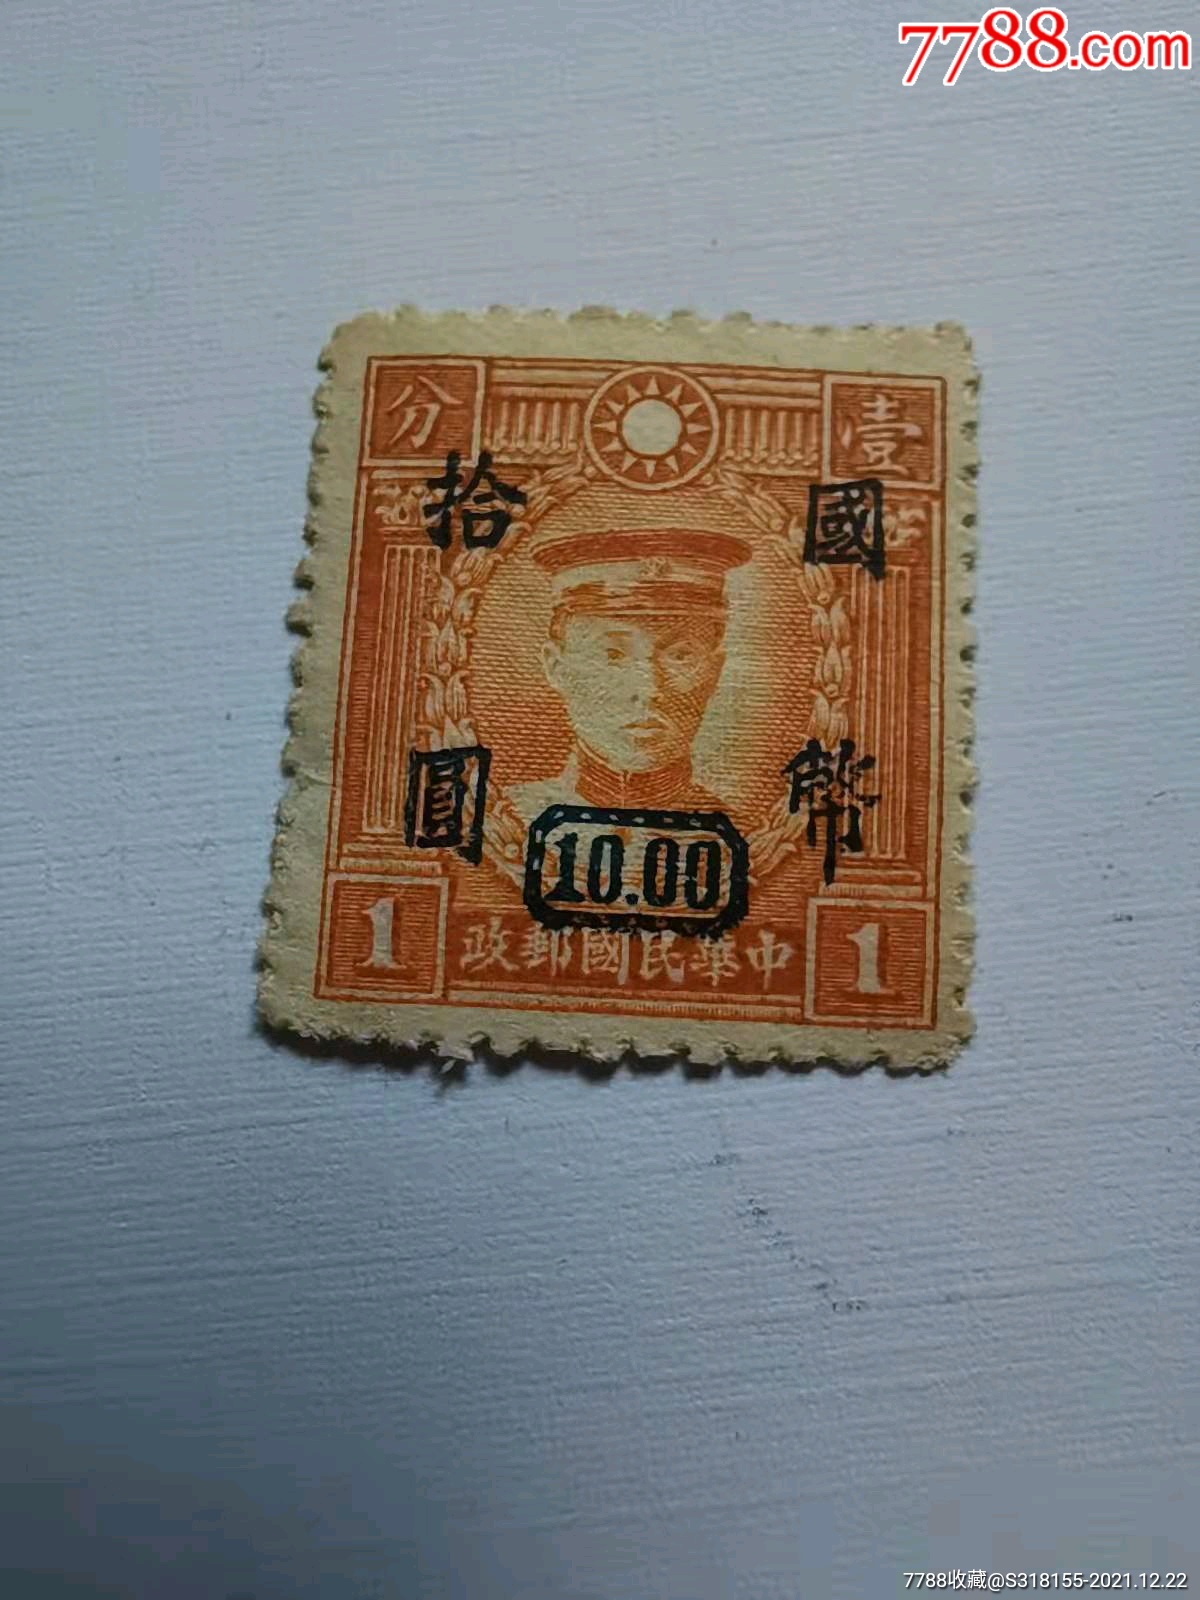 中华老民国邮票一分,加盖10元国币